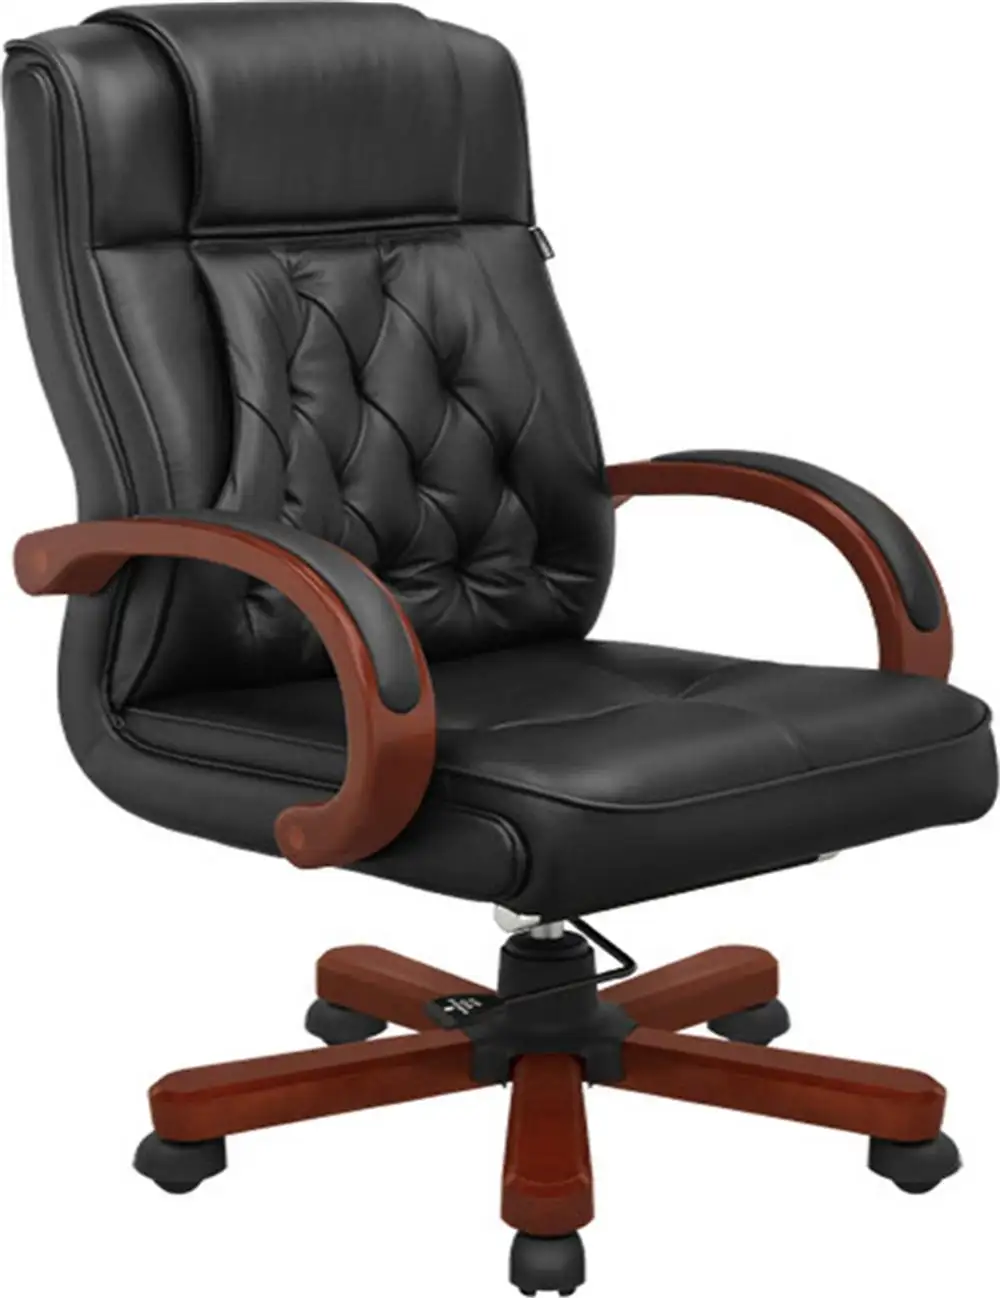 Chaise de bureau ergonomique en bois, mobilier Commercial, fauteuil avec accoudoirs, pour adultes, prix d'usine, haute qualité